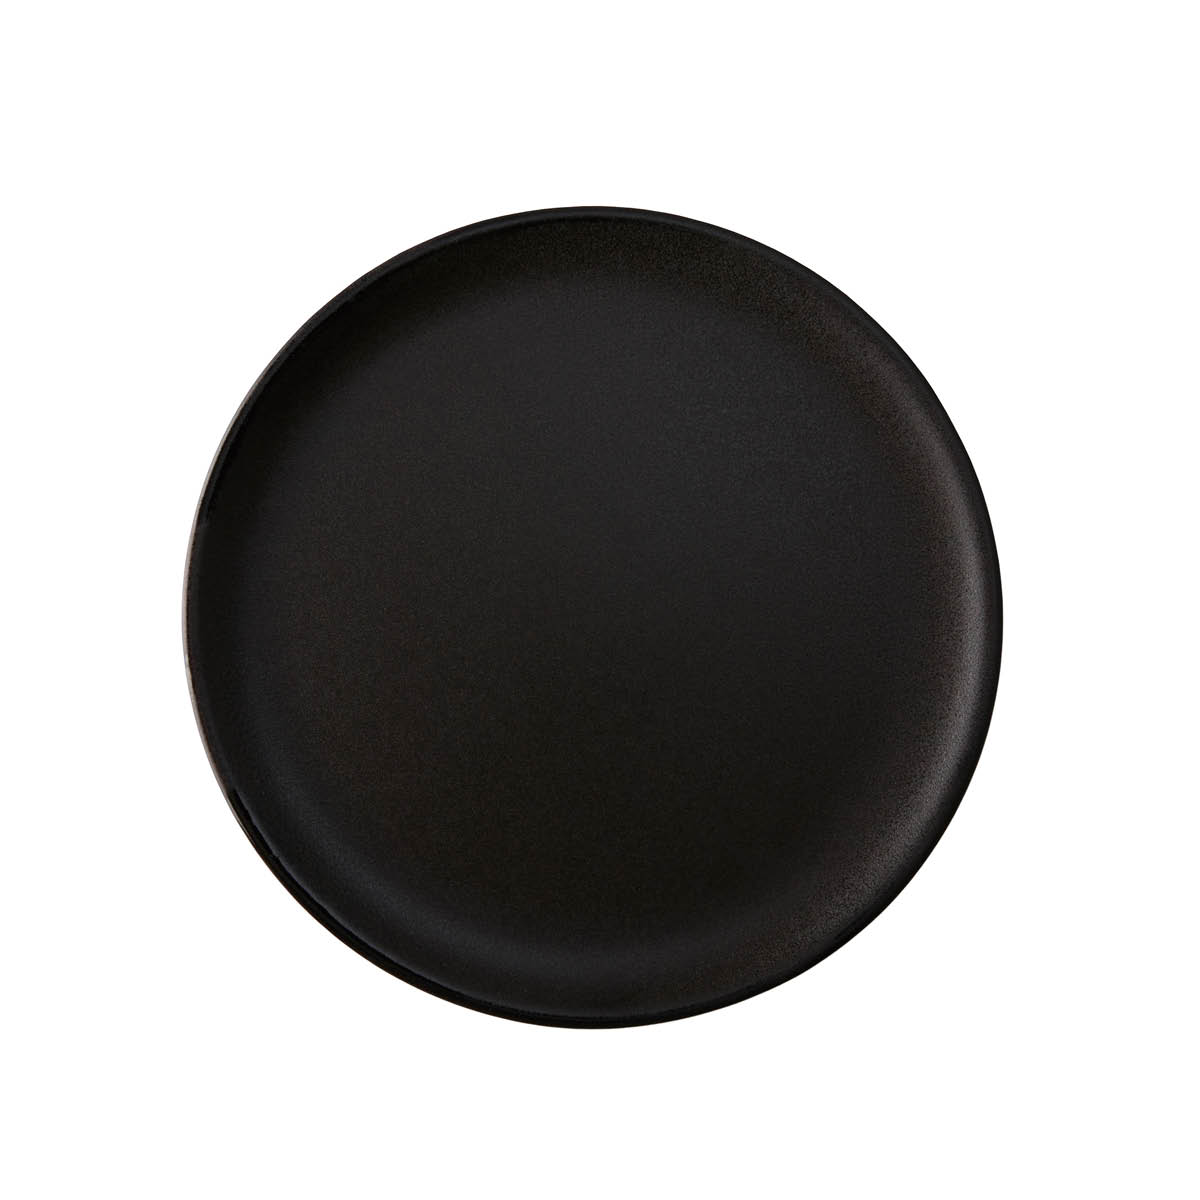 Aida – Raw Desserttallrik 20 cm Titanium Black